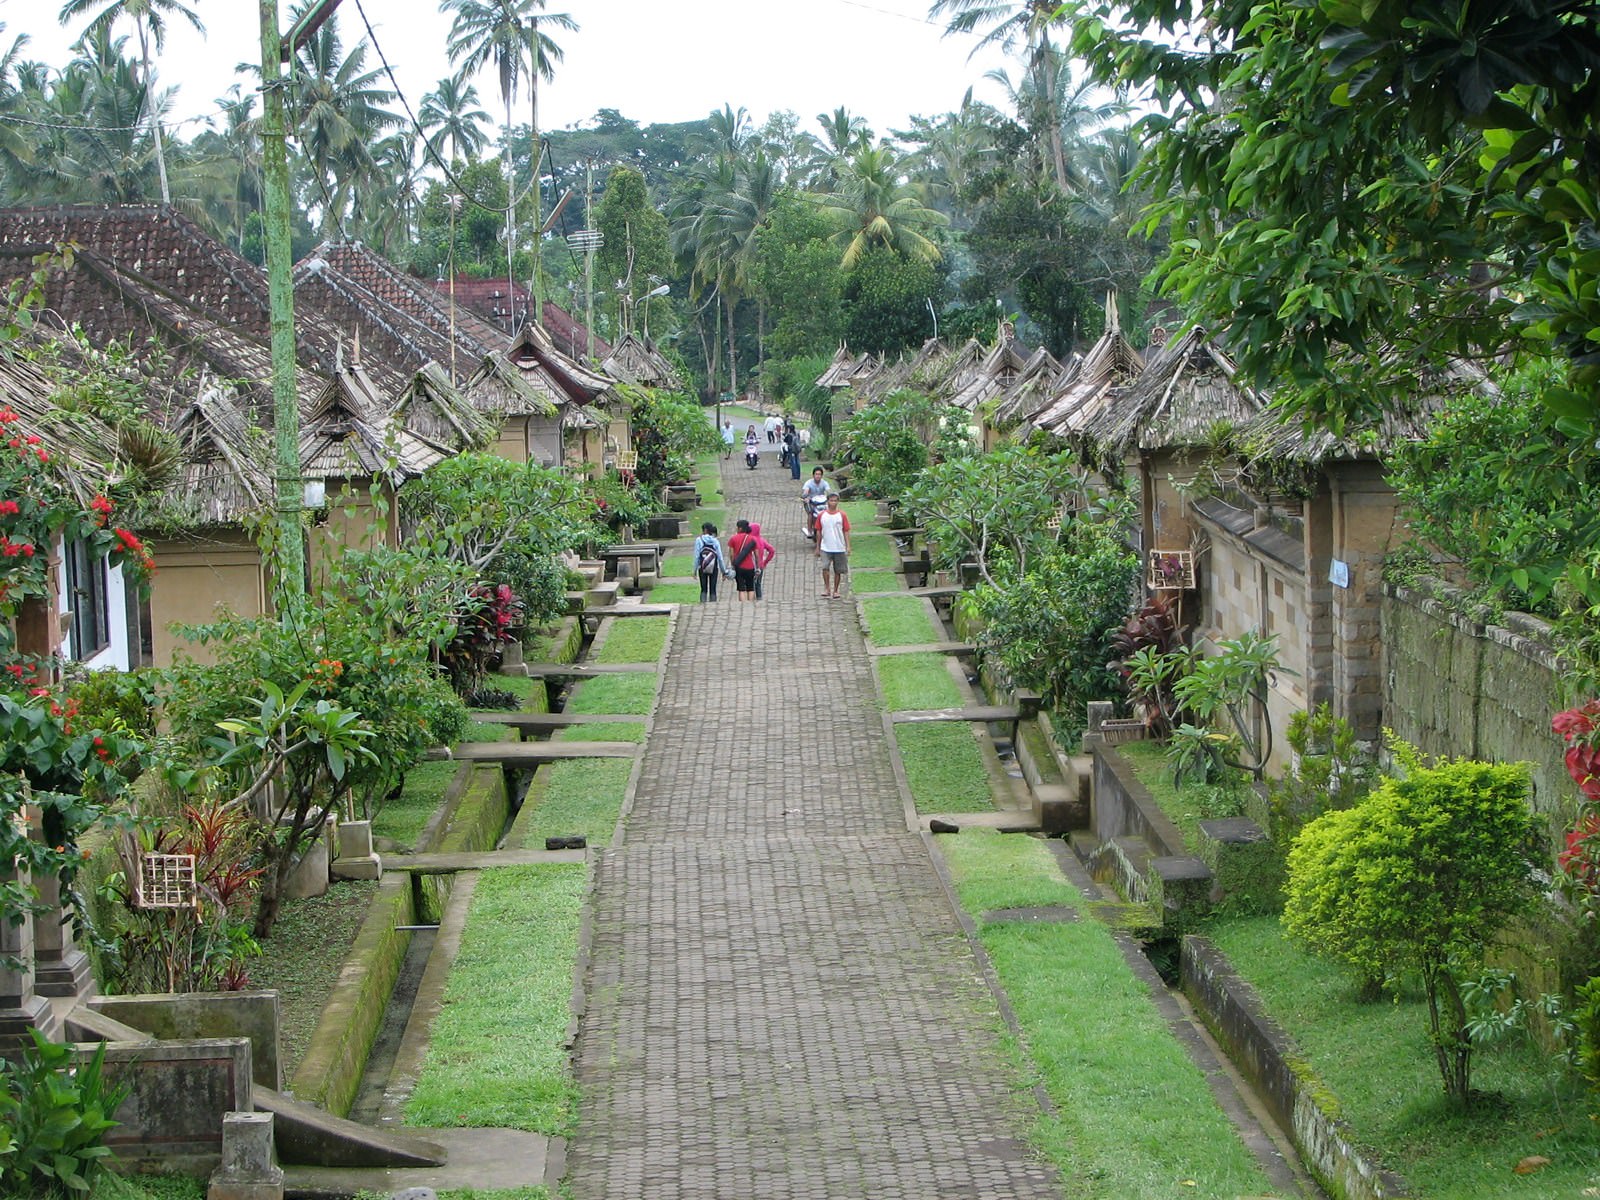 Villes et Villages Village communautaire balinais